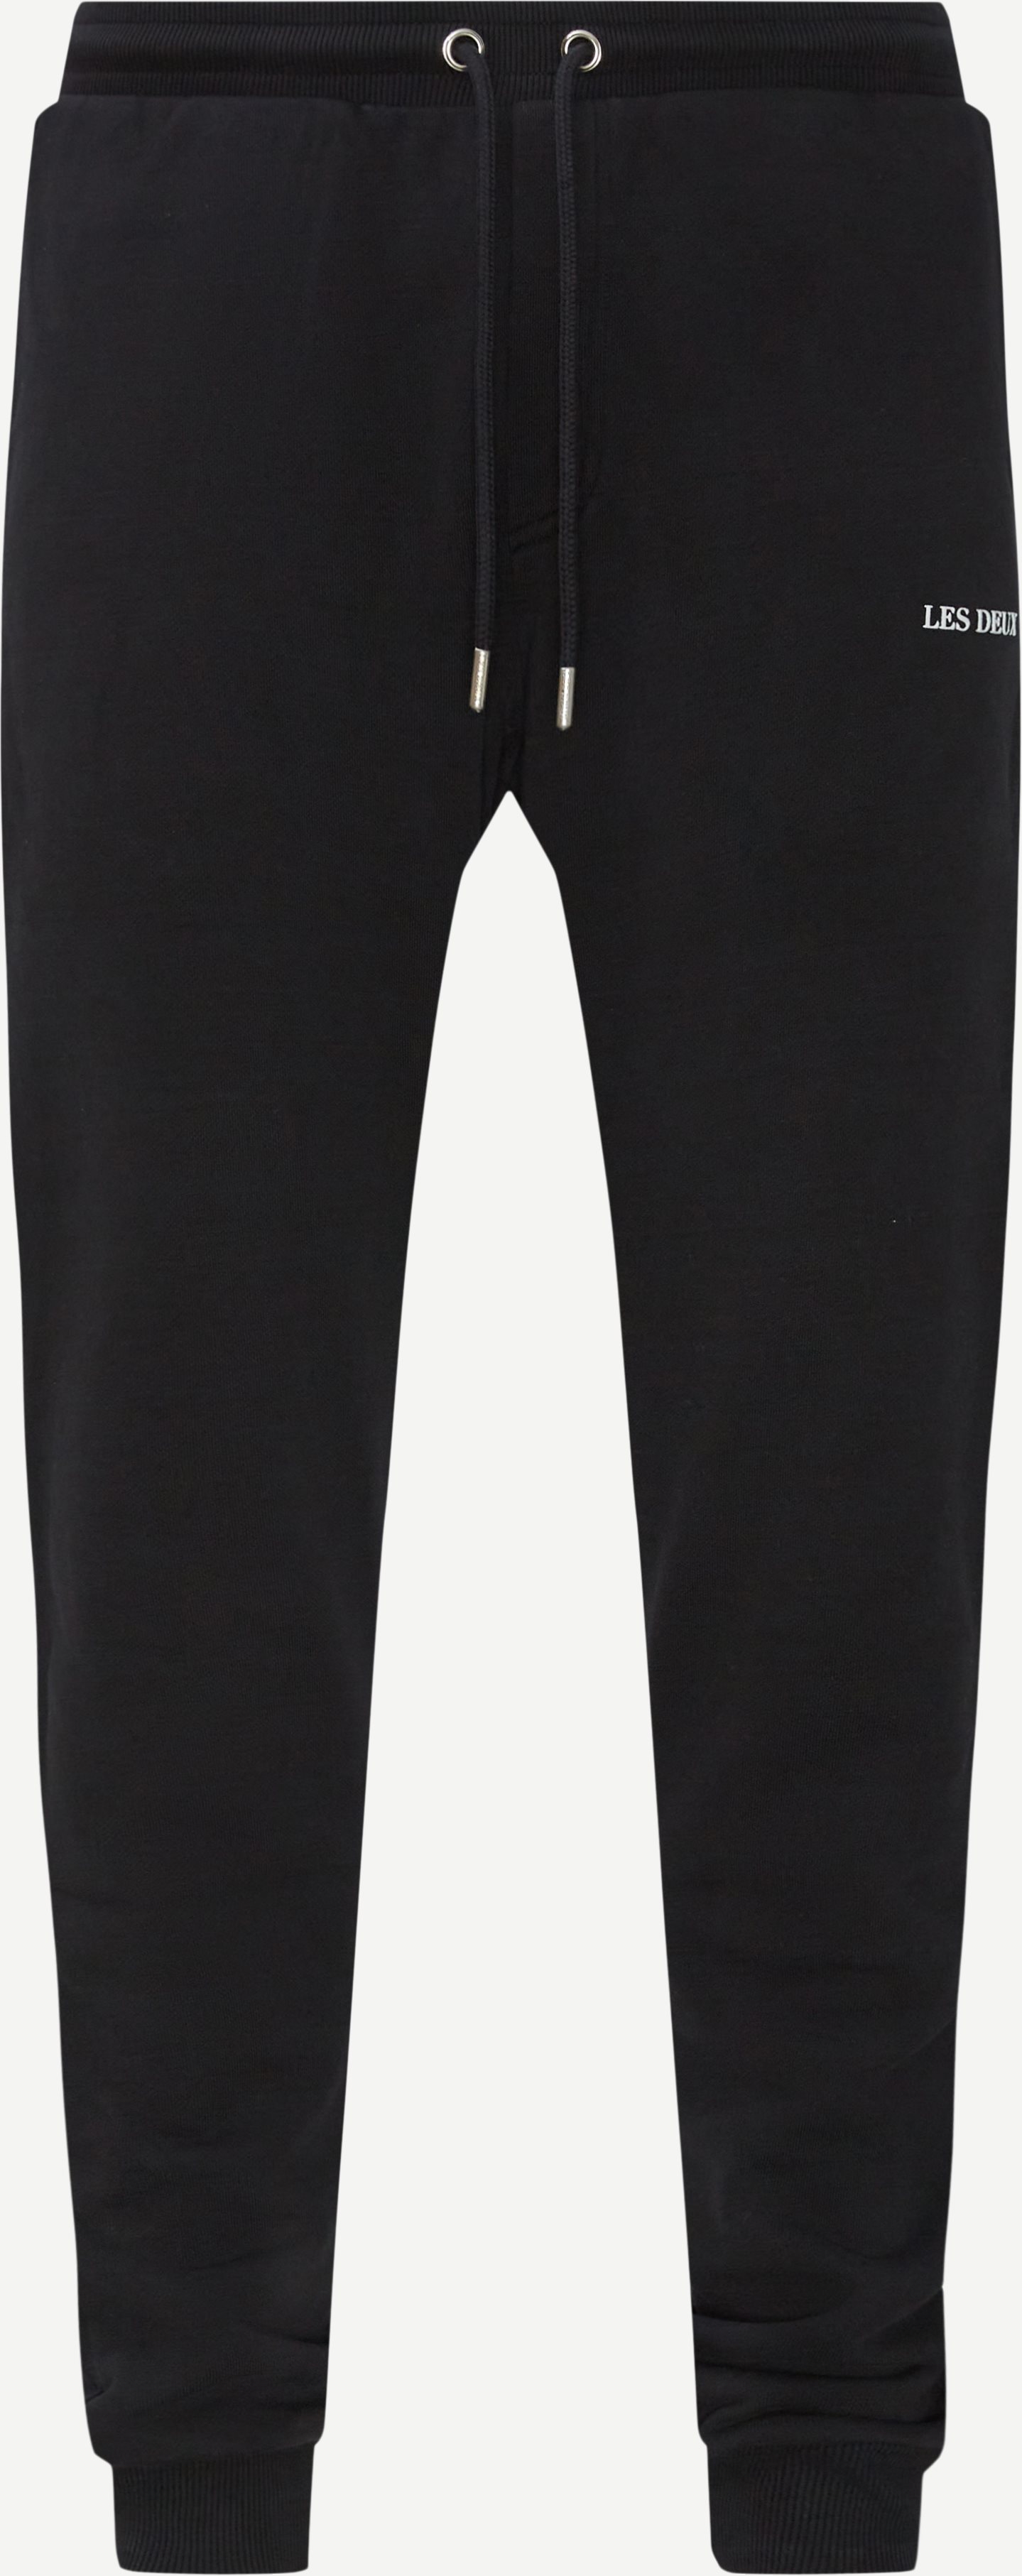 Les Deux Trousers LENS SWEATPANTS LDM530015 Black